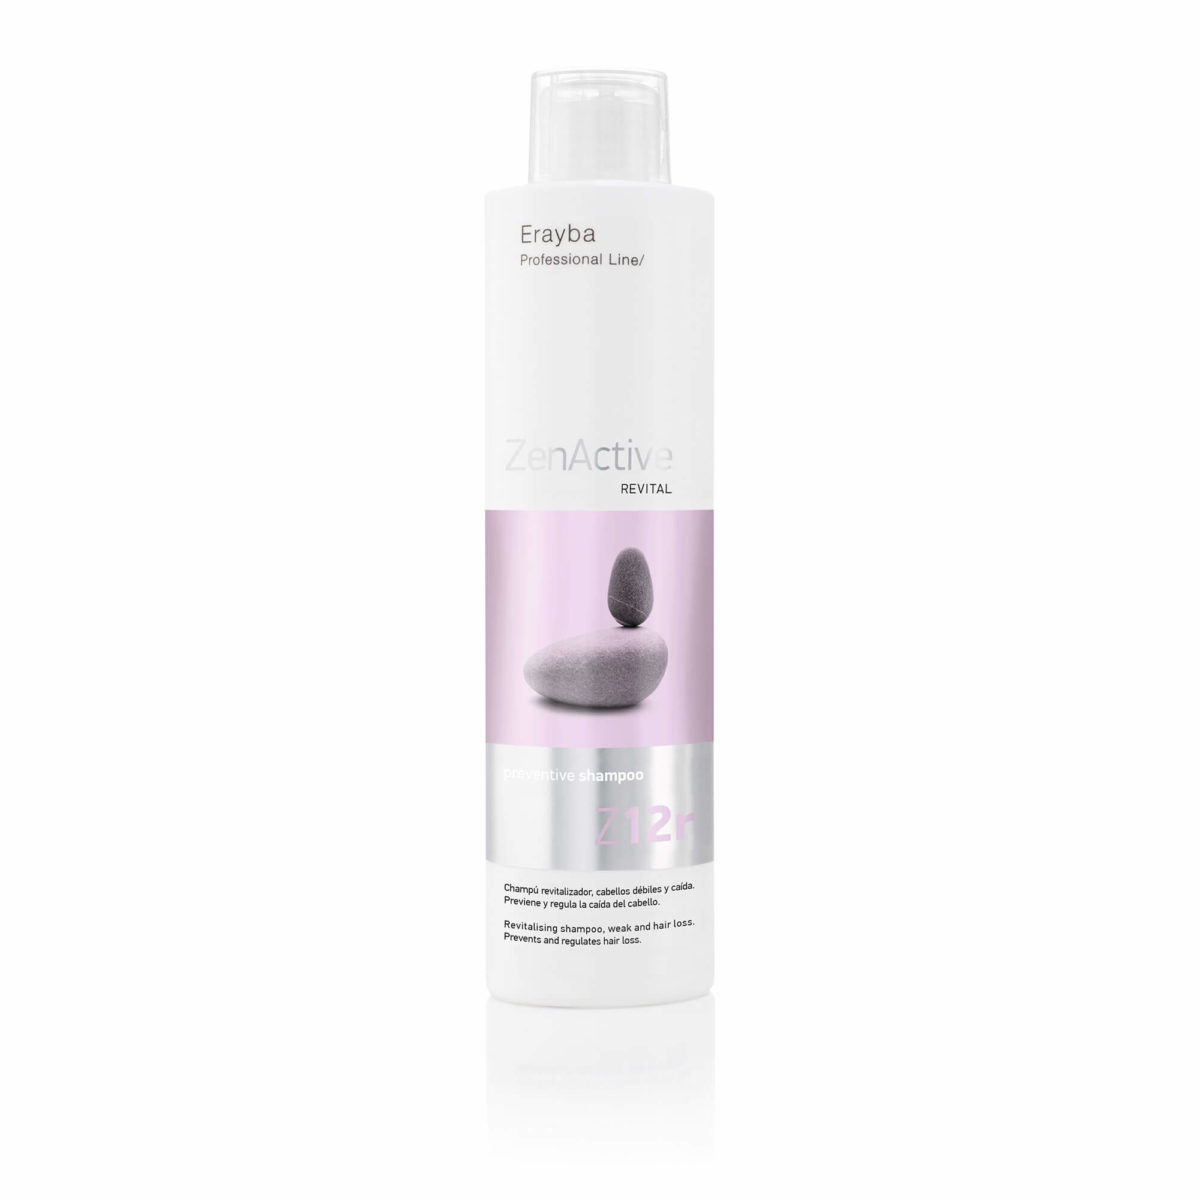 Erayba Zen Active Z12r preventive shampoo 1l